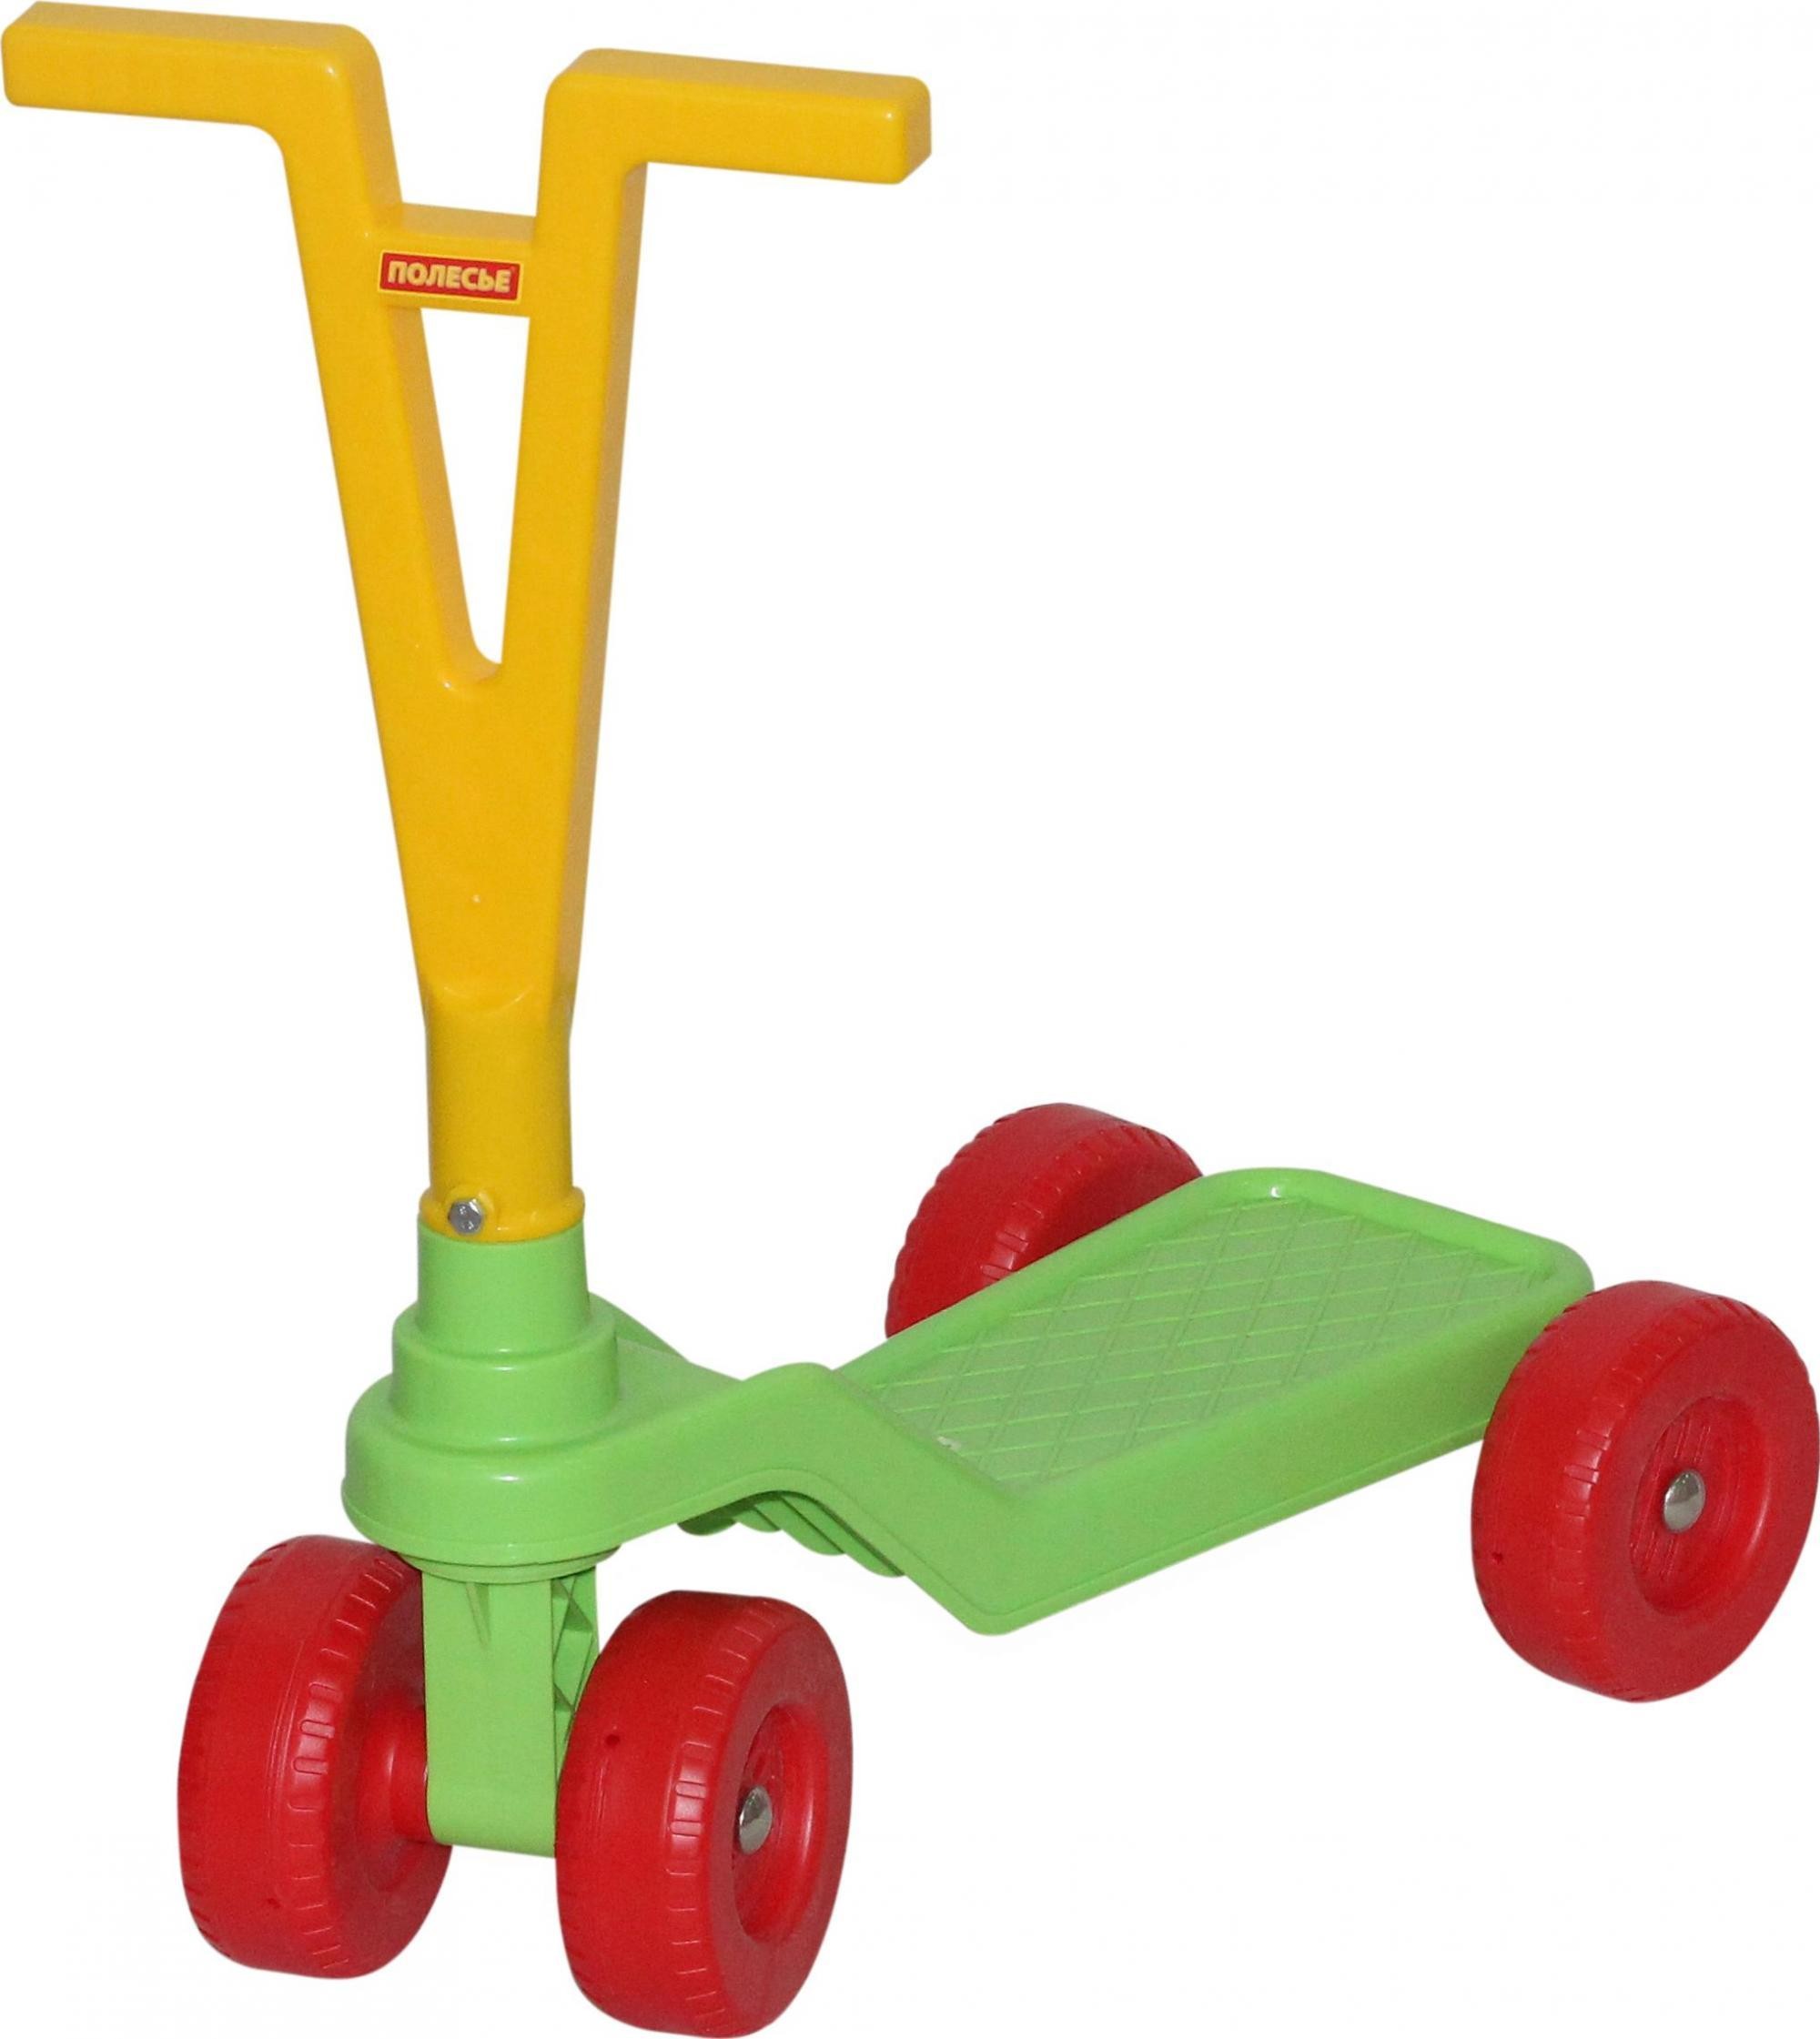 Детский четырёхколёсный самокат